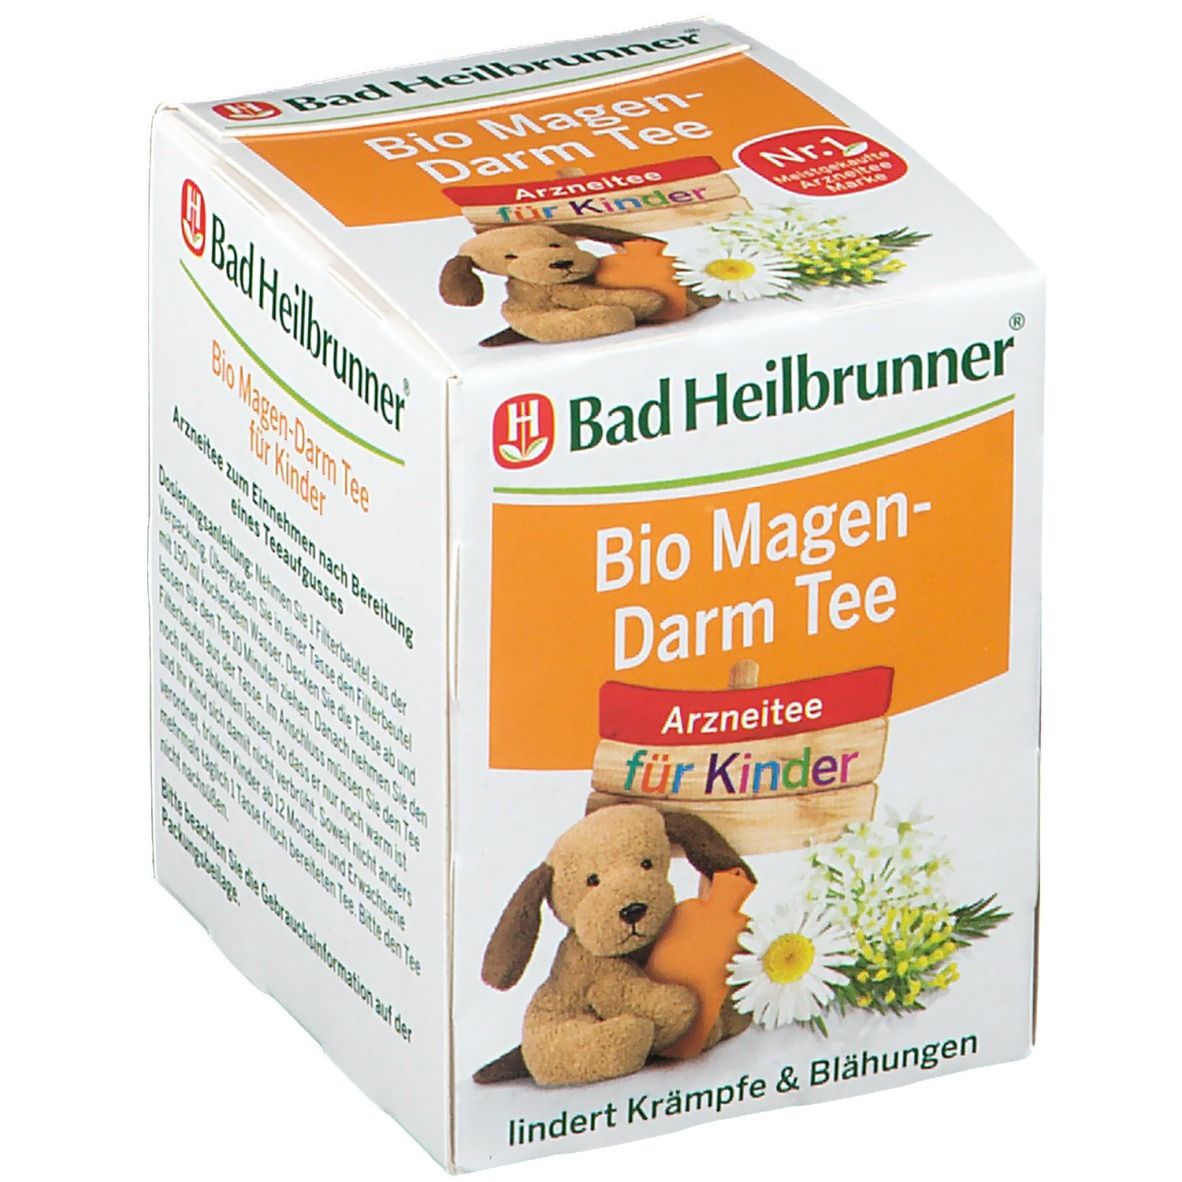 Bad Heilbrunner Bio Magen-Darm Tee für Kinder